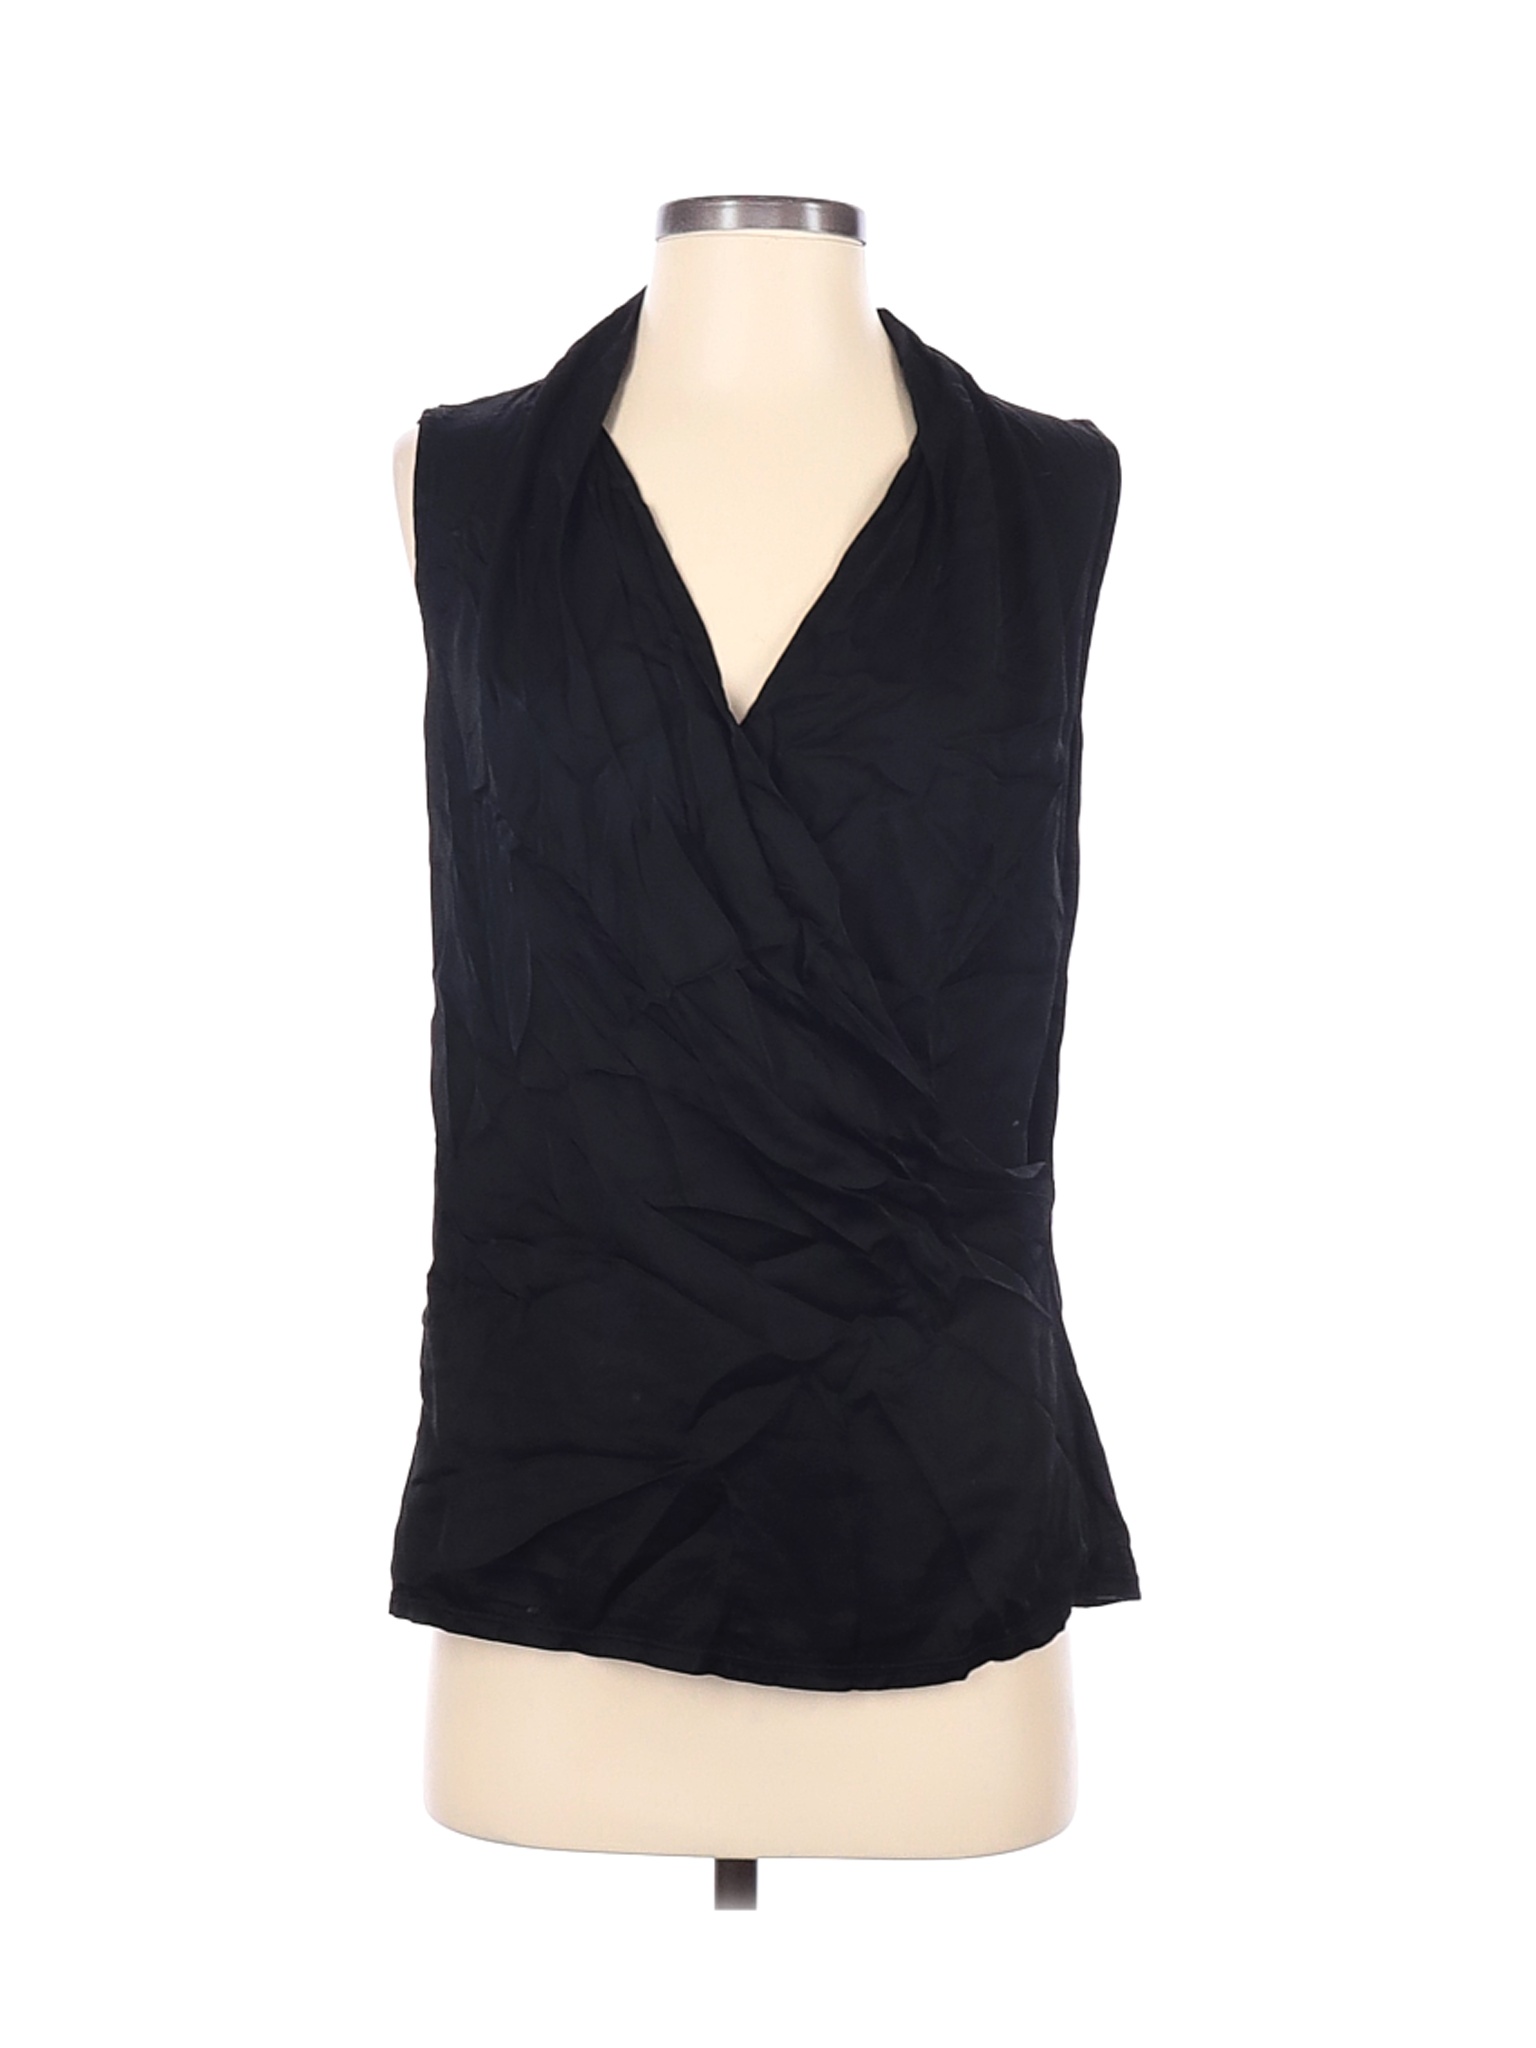 Velvet Women Black Sleeveless Blouse S | eBay